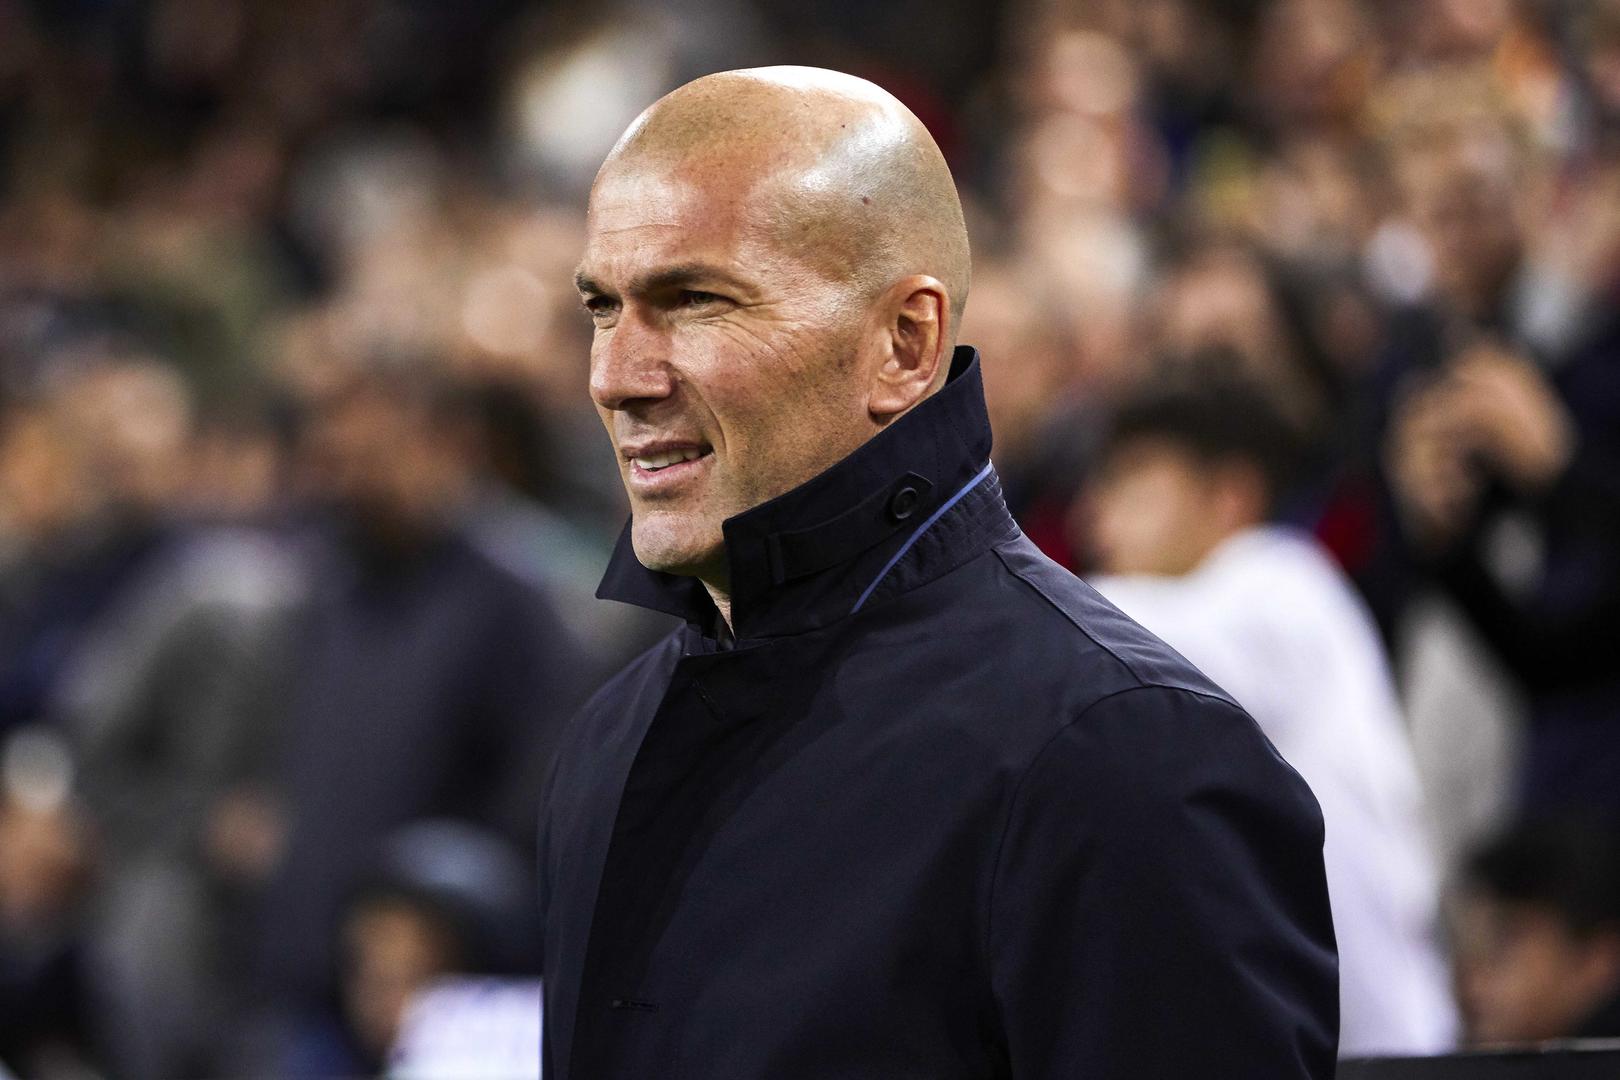 Zidane: J’ai mon avis sur le calendrier des rencontres mais je ne vais pas m’impliquer